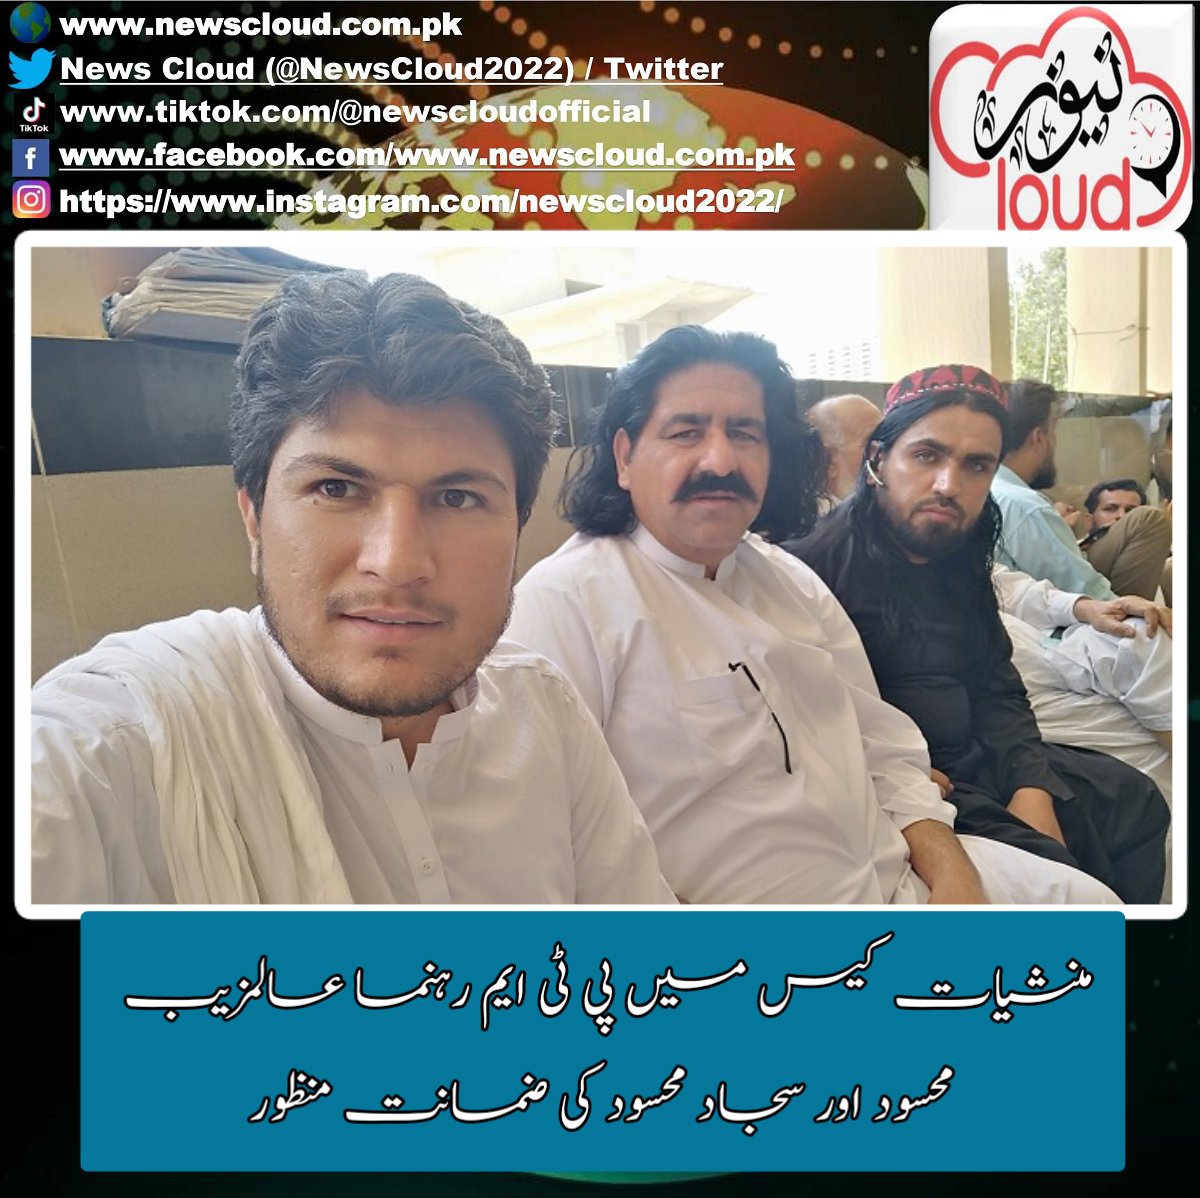 ڈیرہ اسماعیل خان،عدالت نے منشیات کیس میں پشتون تحفظ موومنٹ کے رہنماء عالمزیب محسود اور سجاد محسود کی ضمانت منظور کرلی۔
#alamzebmehsud